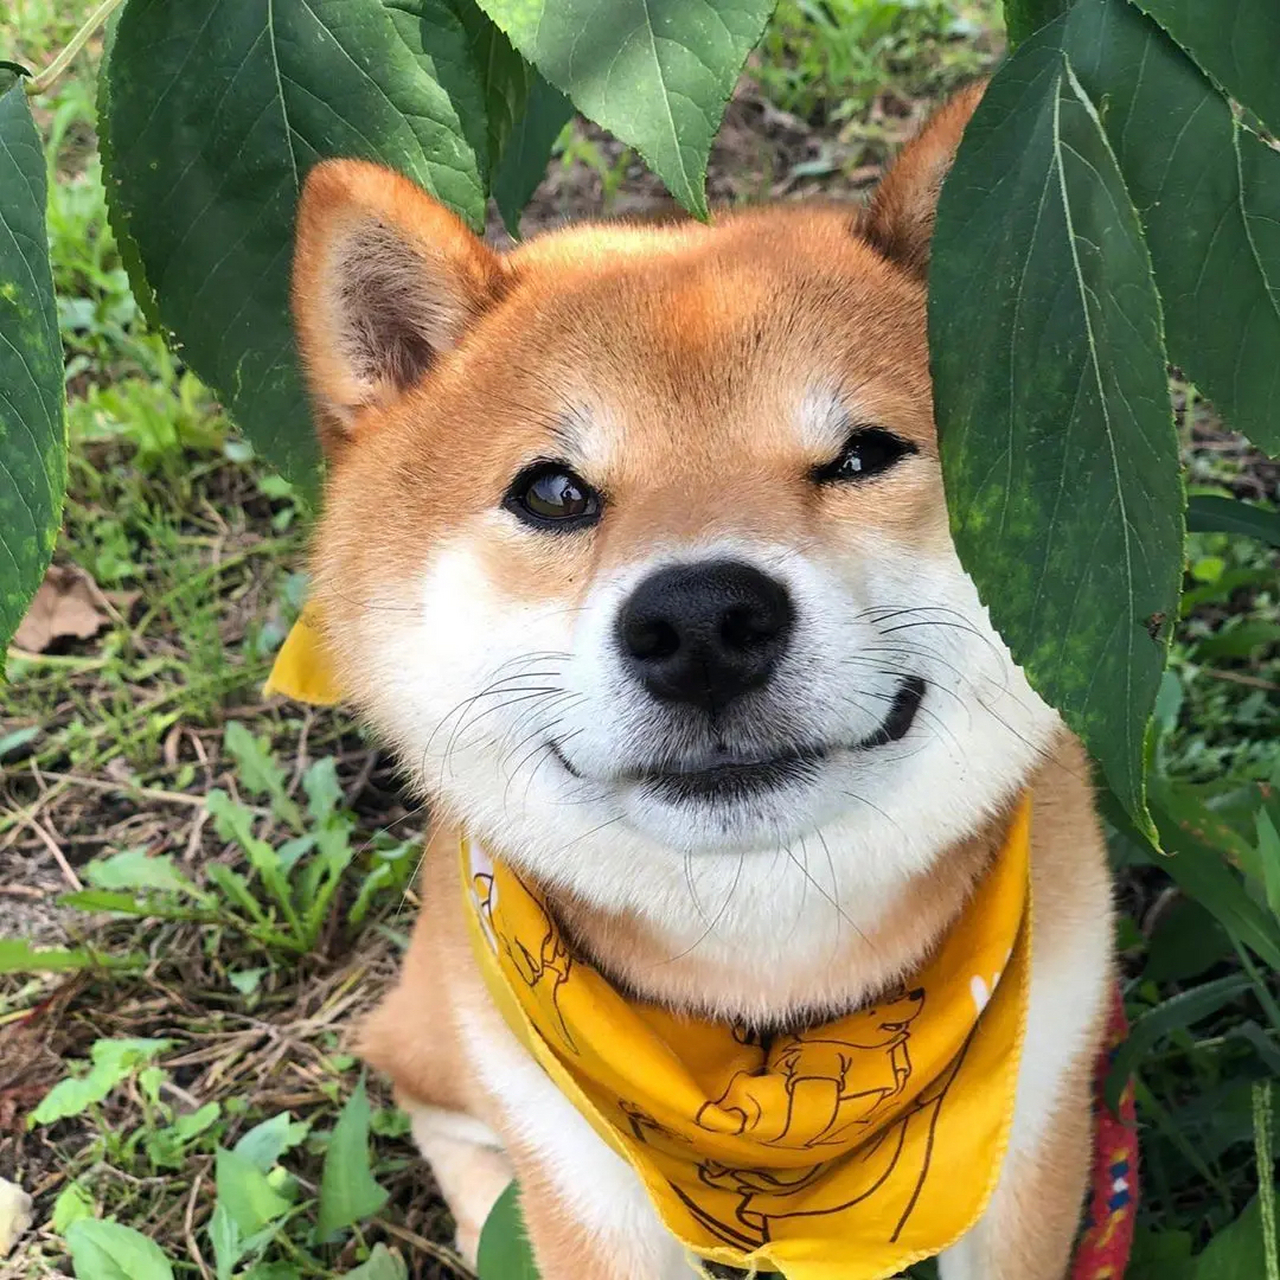 来自秋田犬的微笑: 狗狗的微笑能不能把你的心疼治愈呢?